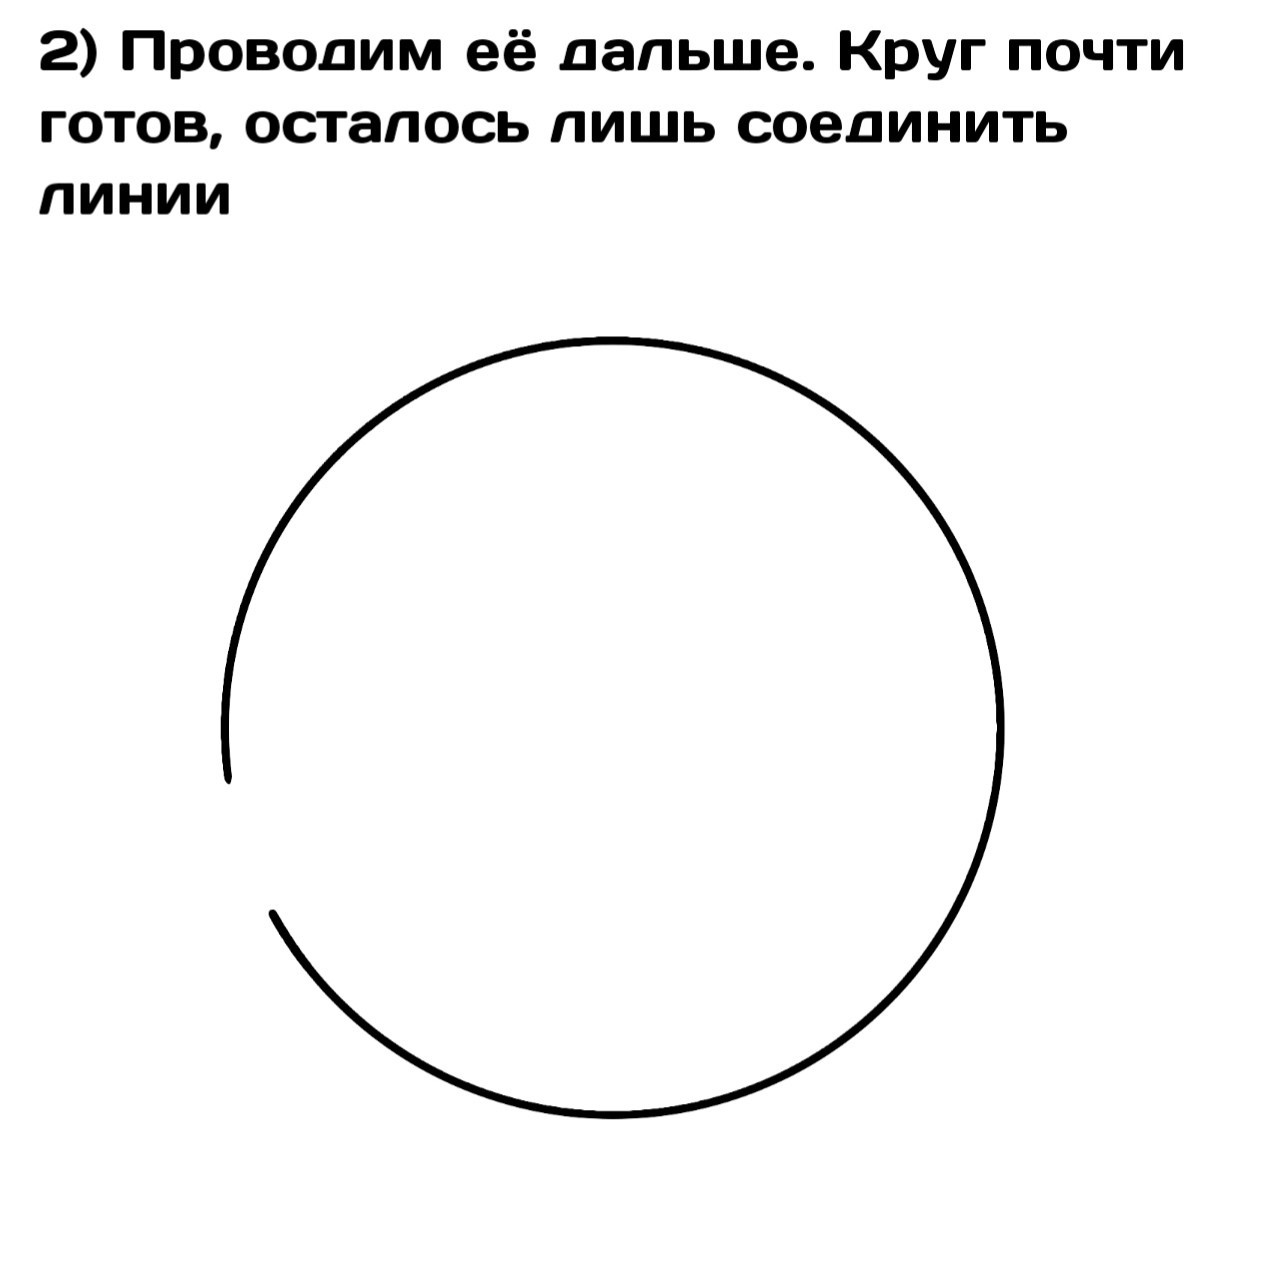 Неправильный круг